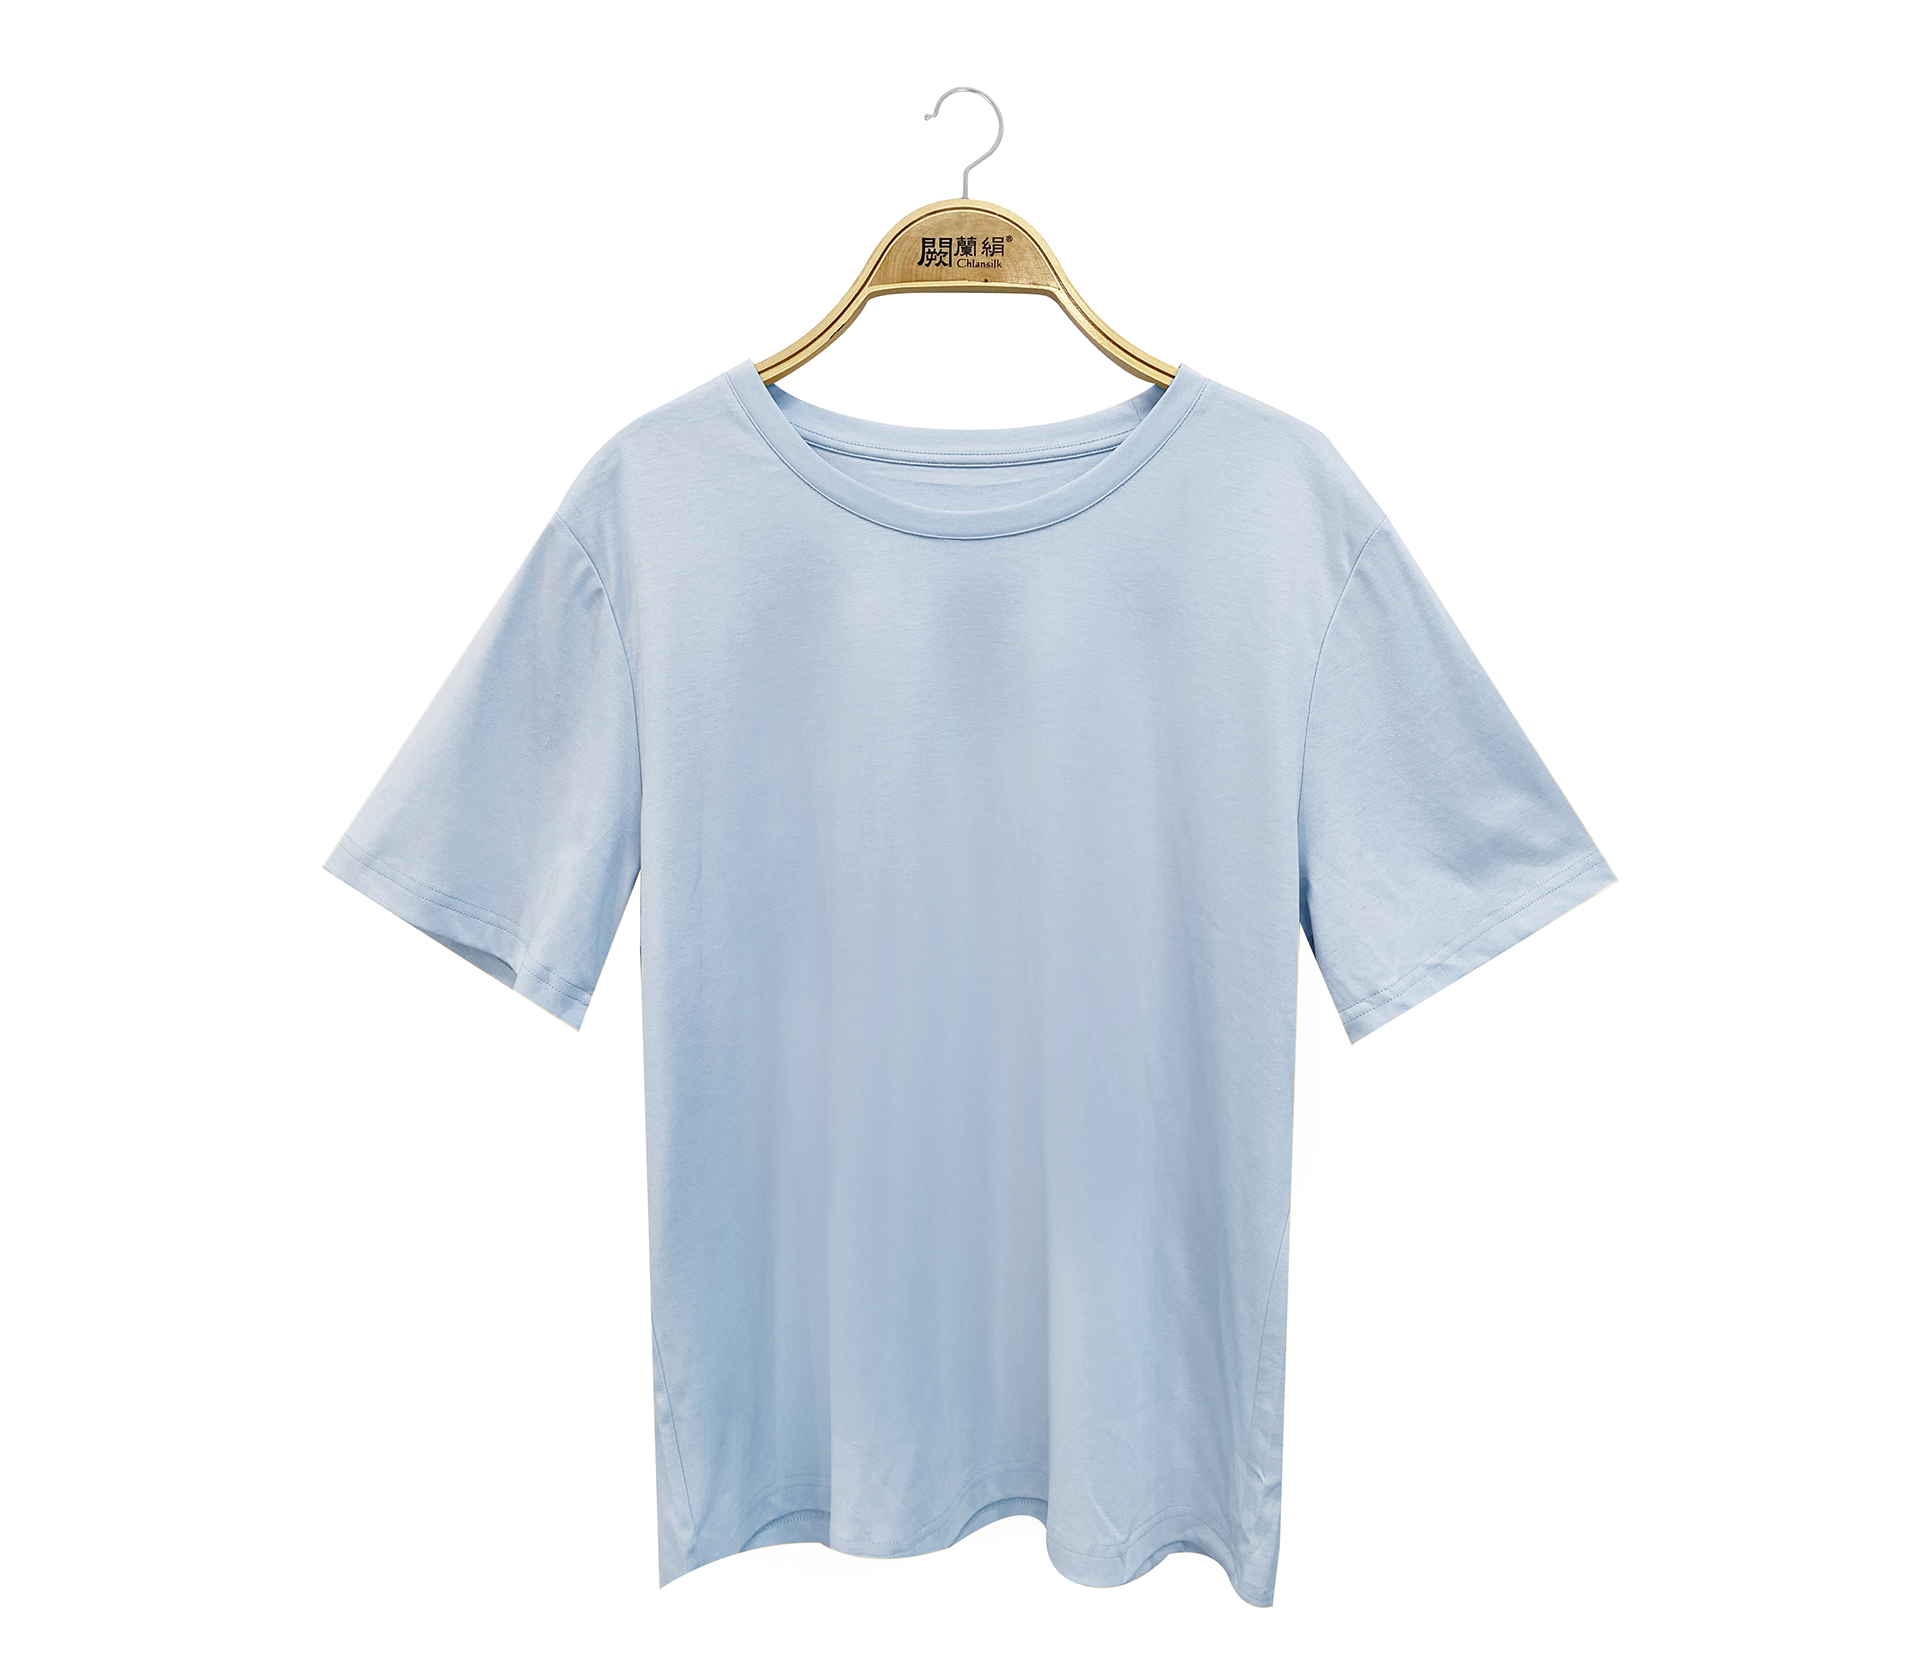 闕蘭絹莫代爾絲棉短袖上衣 - 藍色 - 6687